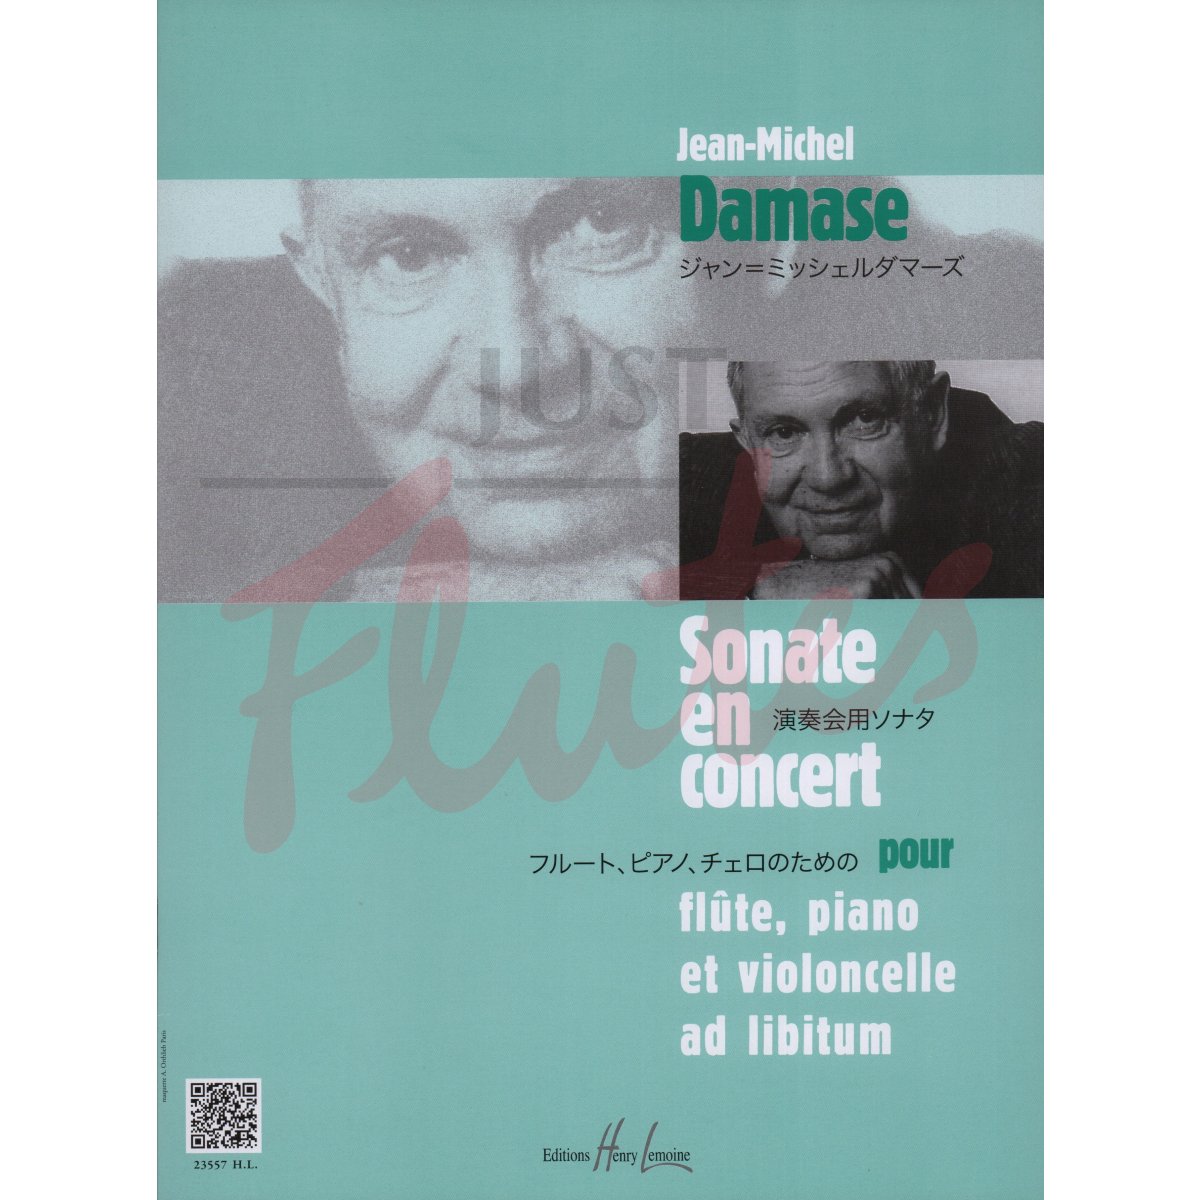 Sonate en Concert for Flute, Piano and Cello ad lib